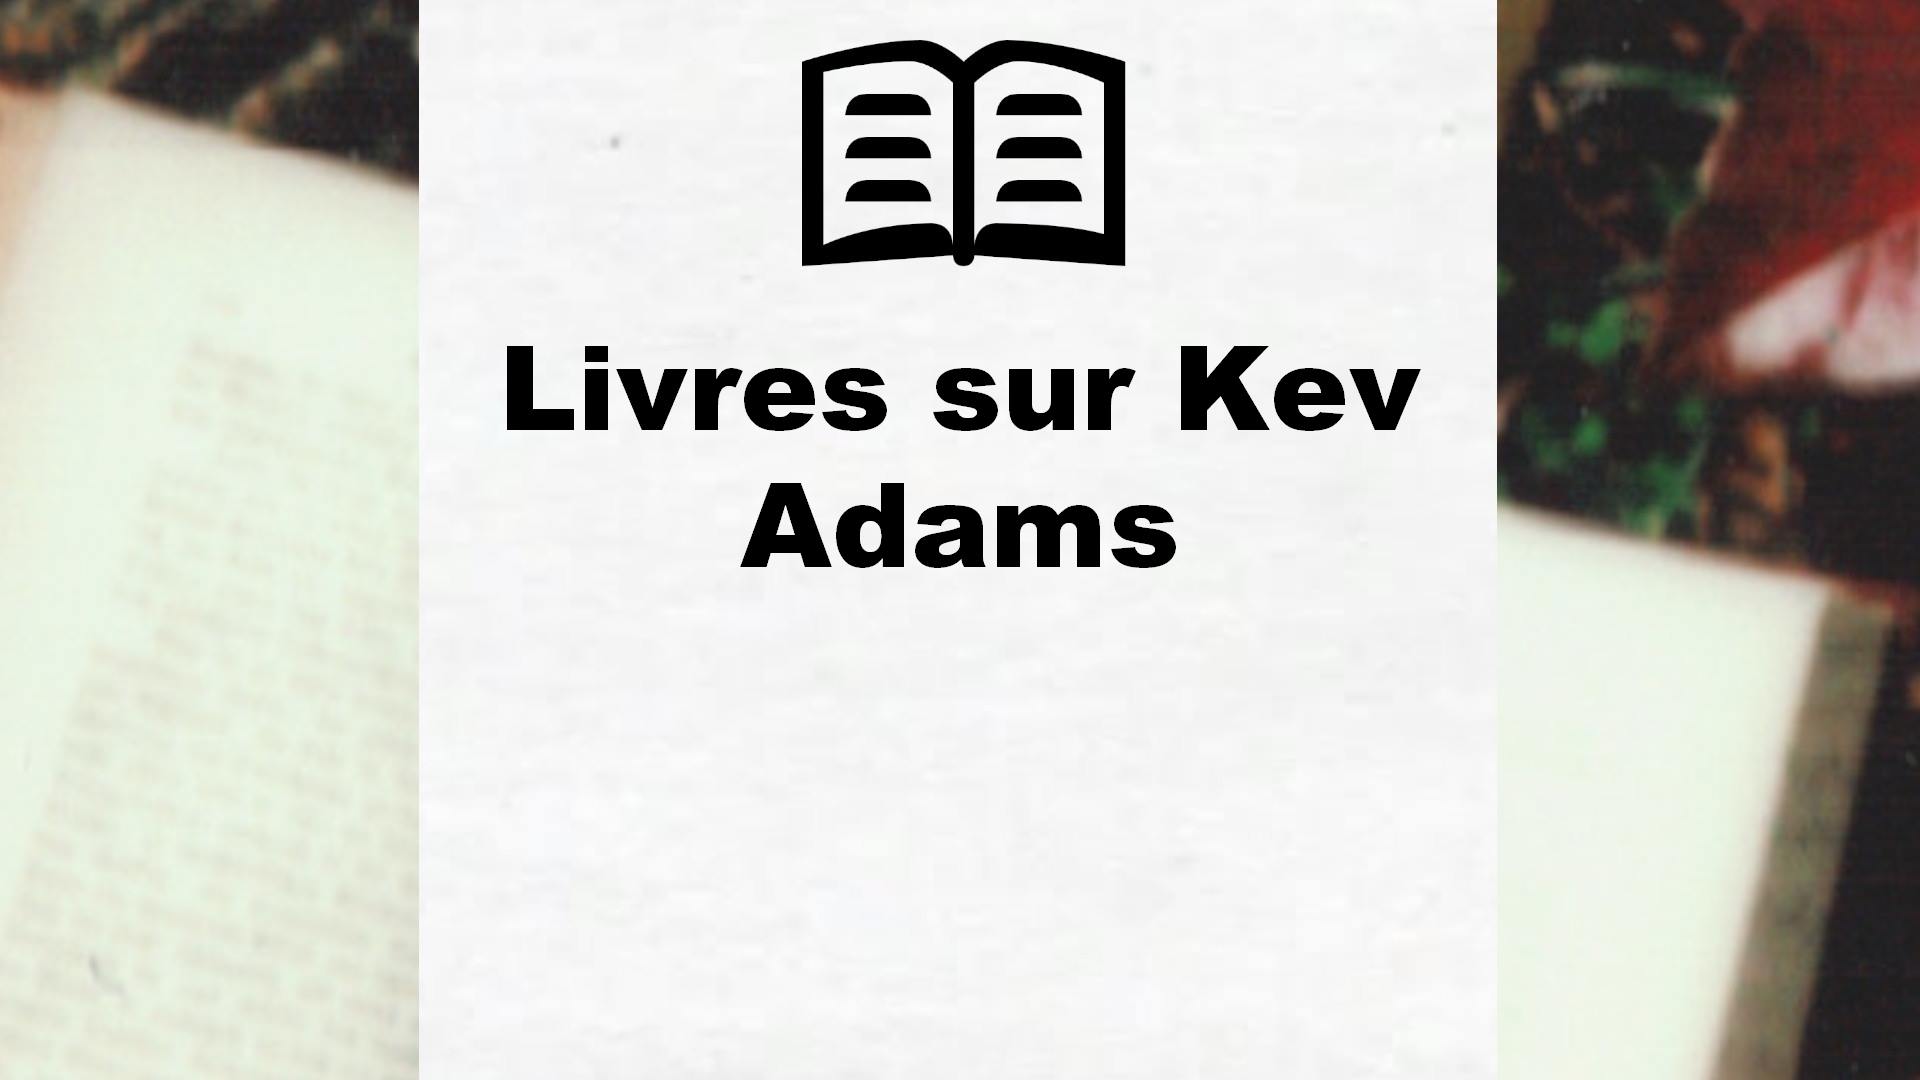 Livres sur Kev Adams